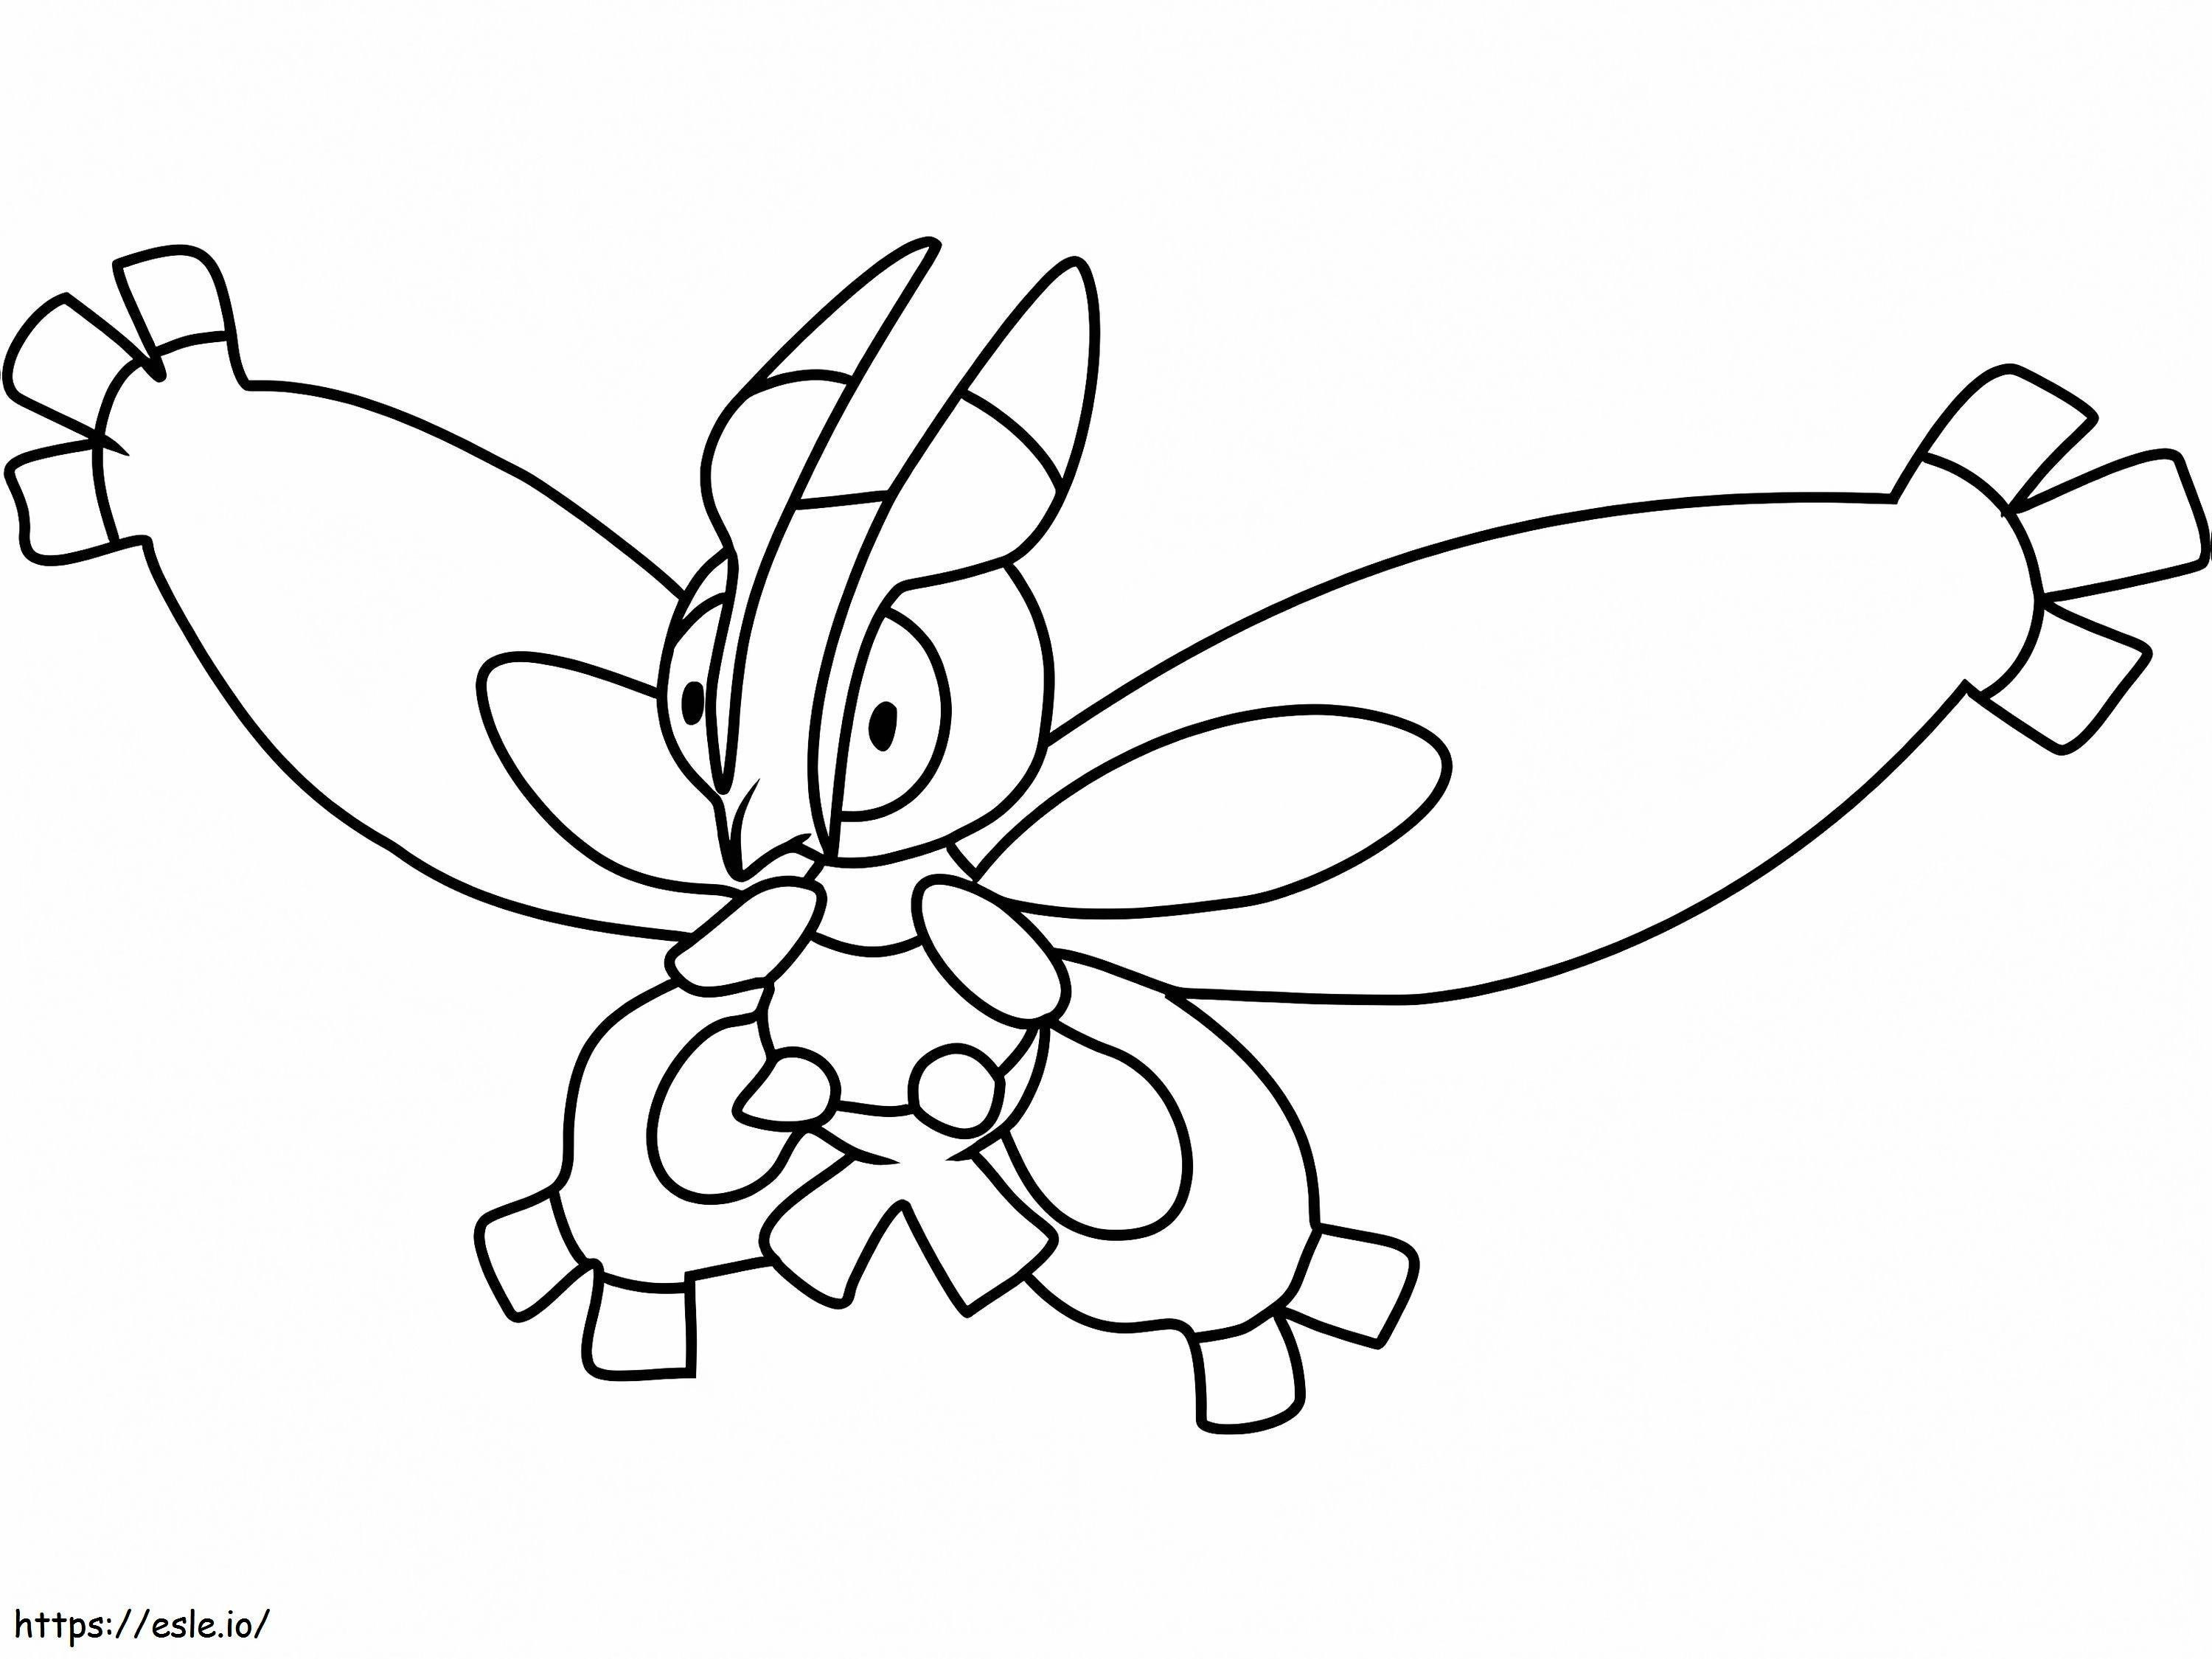 Coloriage Pokémon Mothim Gen 4 à imprimer dessin